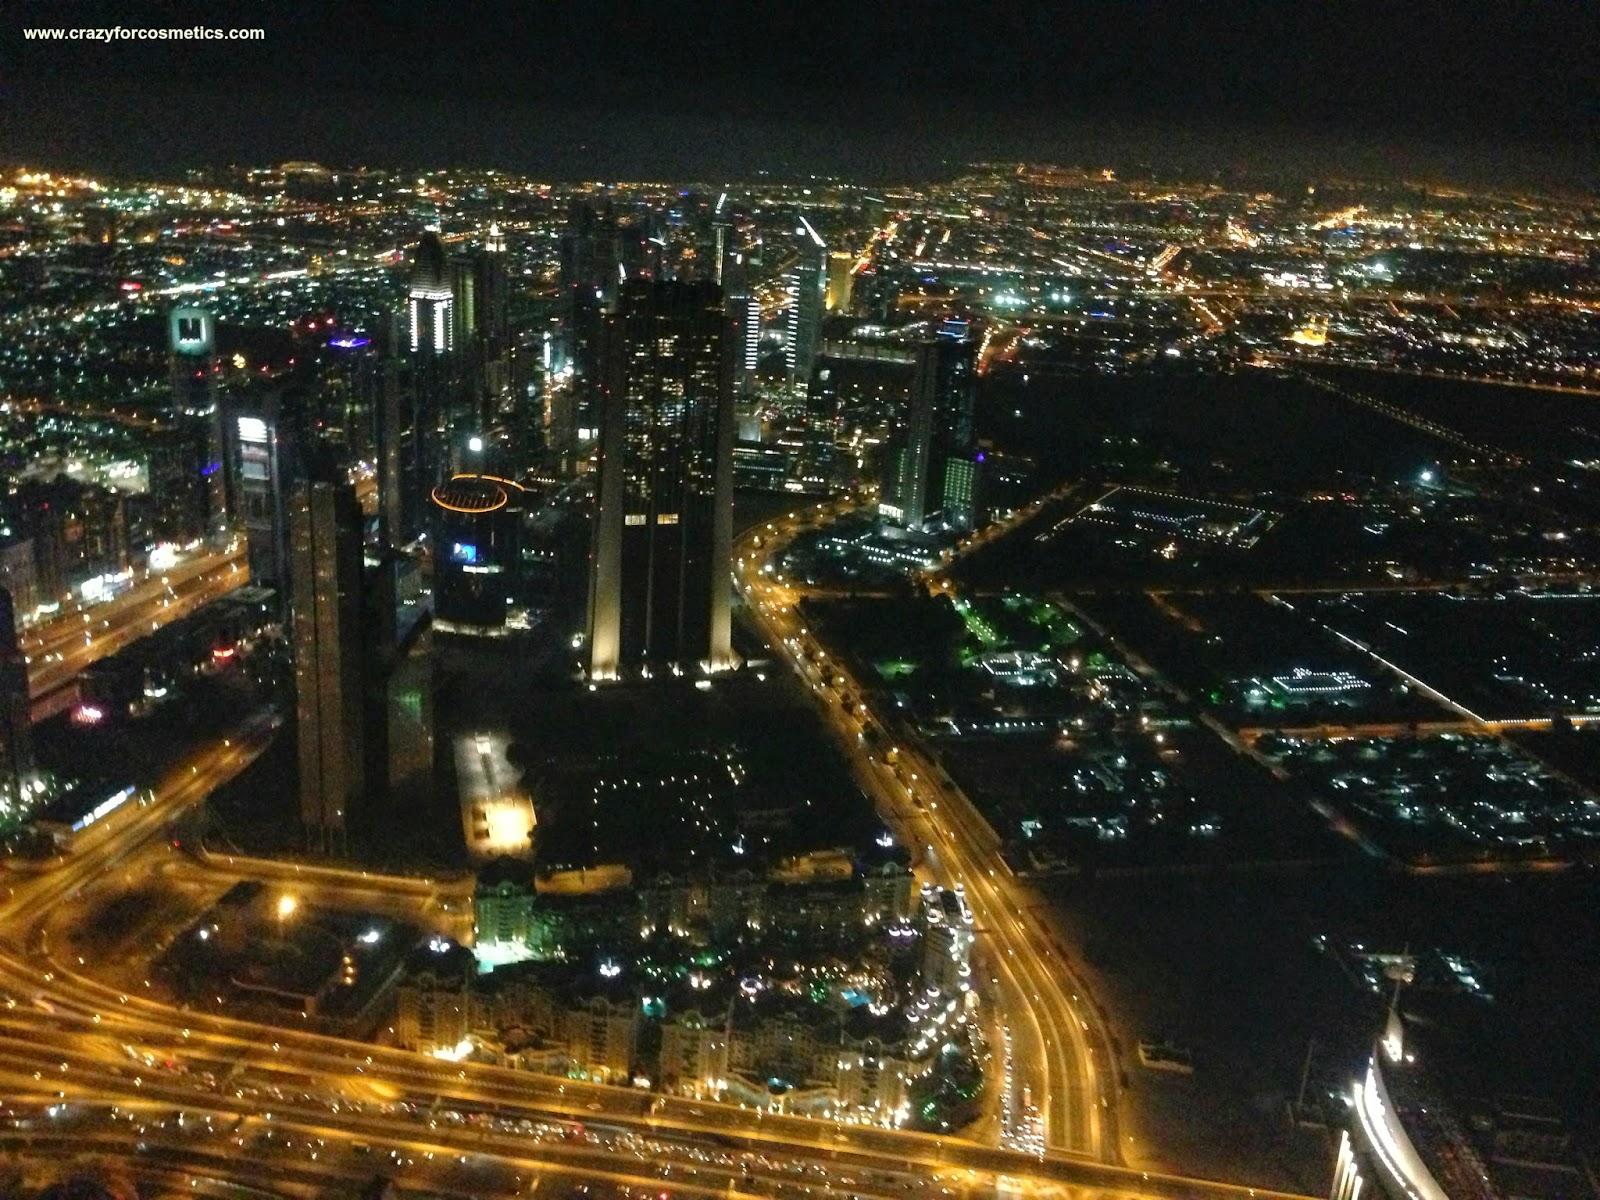 Dubai Trip Planner-Dubai Trip Itinerary- Dubai Hotels Review-Dubai Trip packages-Burj Khalifa Dubai Views-Dubai Autodrome Trip-Dubai Laser Tag – Burj Khalifa Trip-Burj Khalifa views